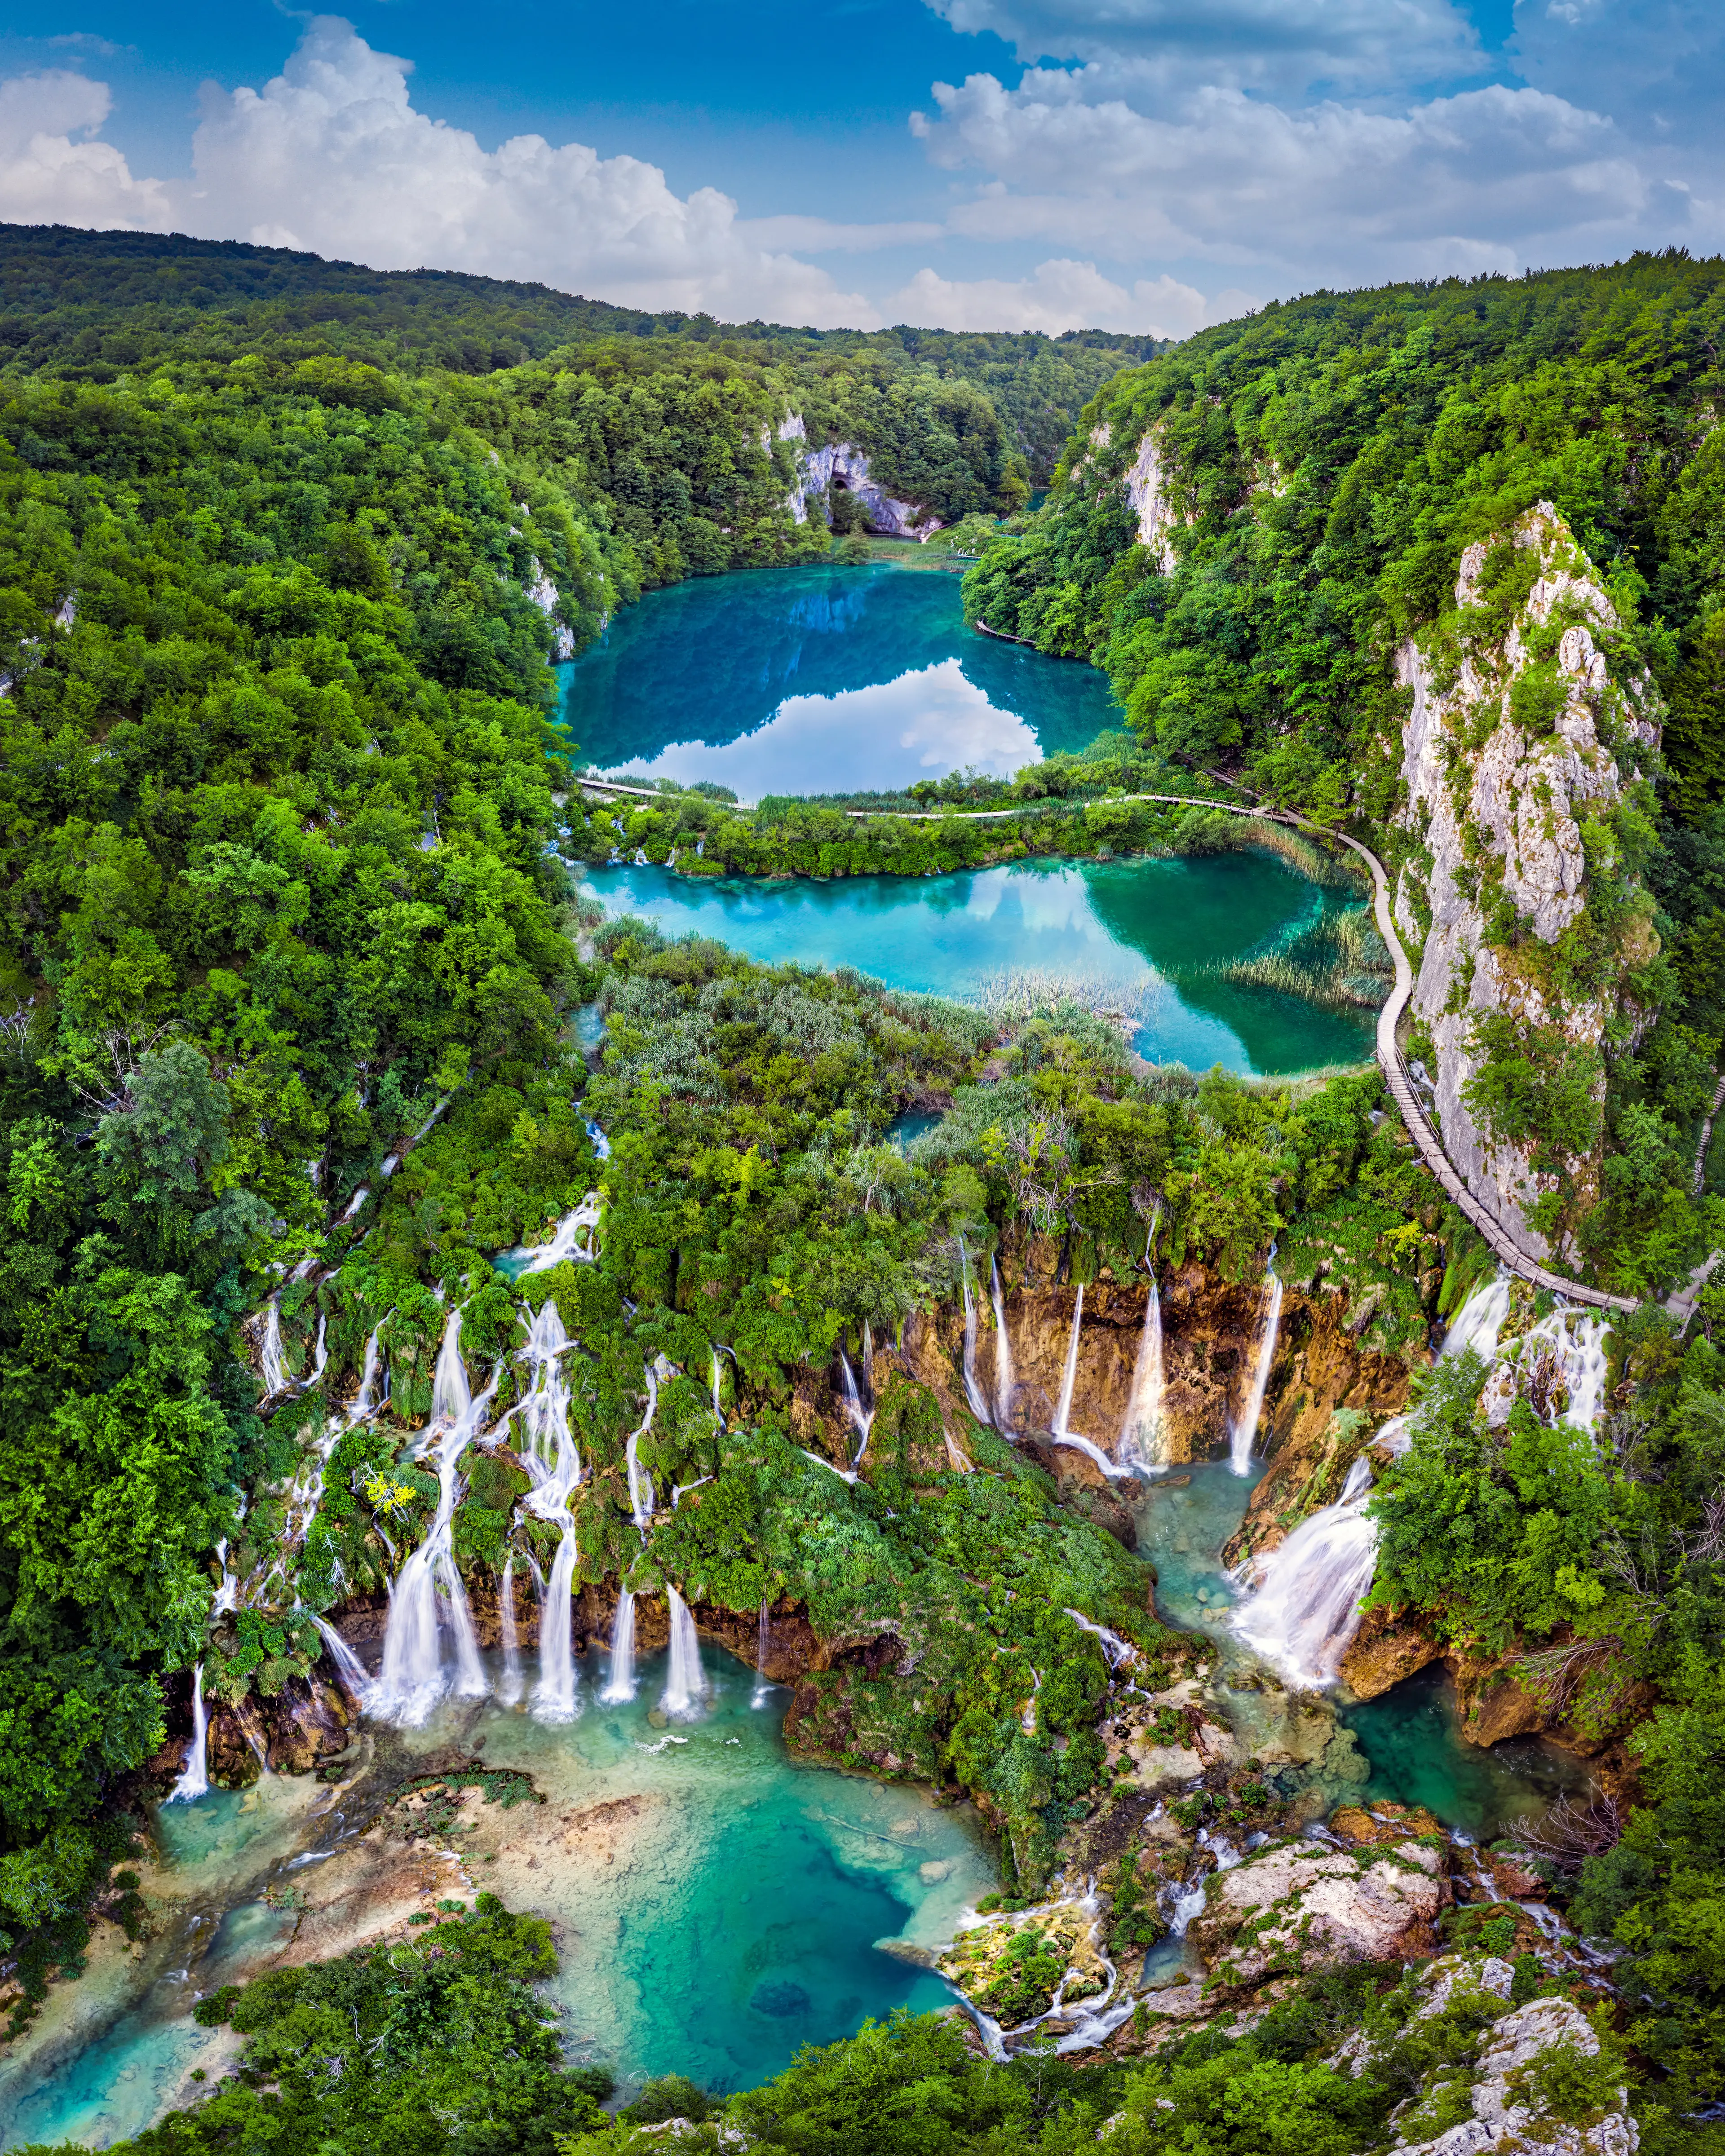 Panoramic view of the beautiful waterfalls